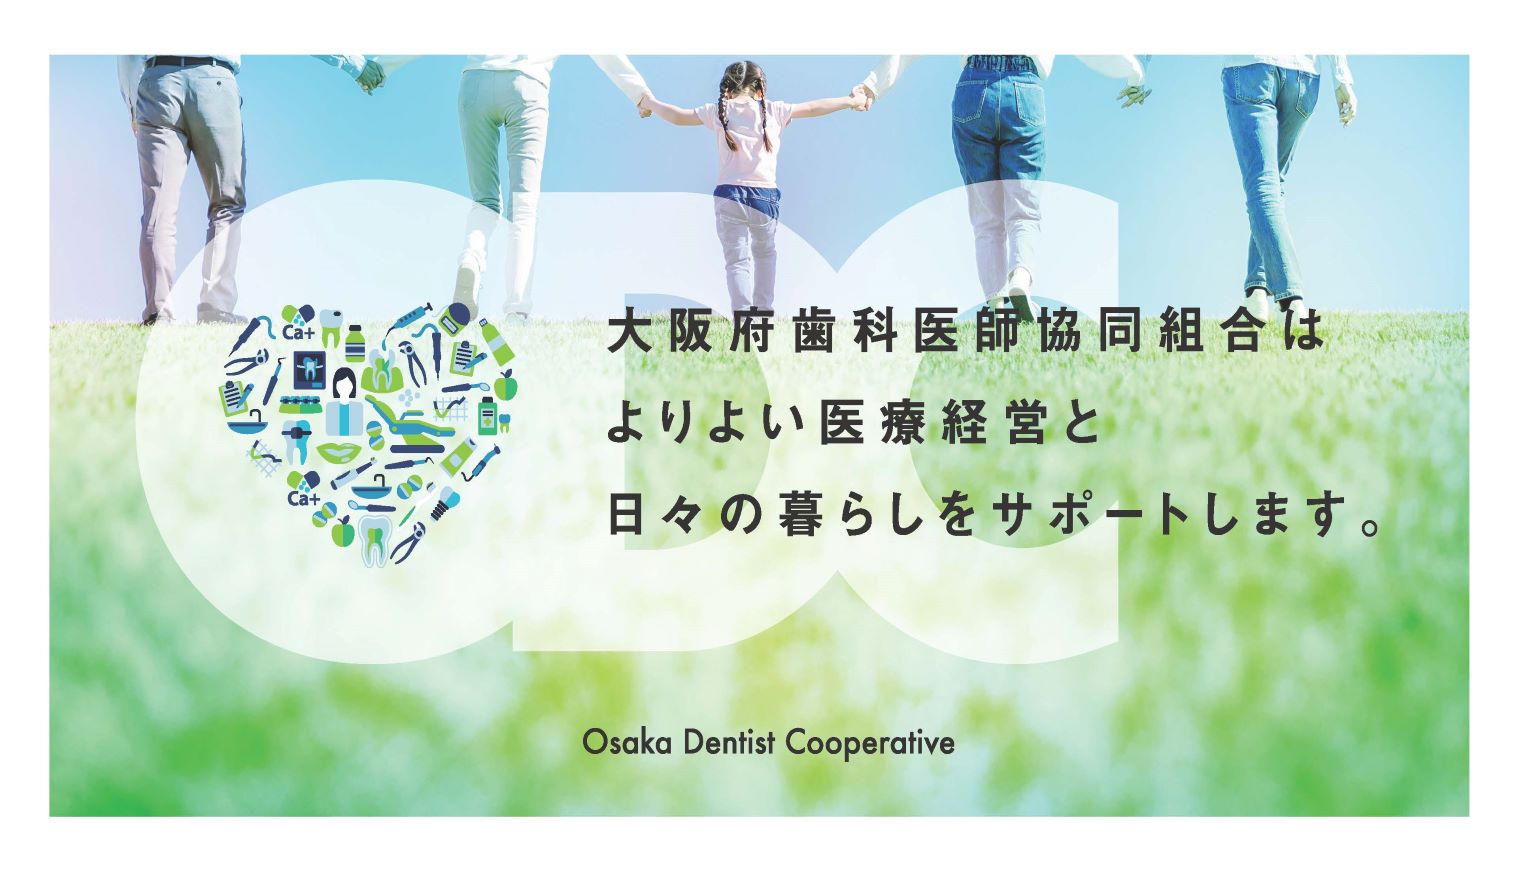 大阪府歯科協同組合はよりよい医療経営と日々の暮らしをサポートします。